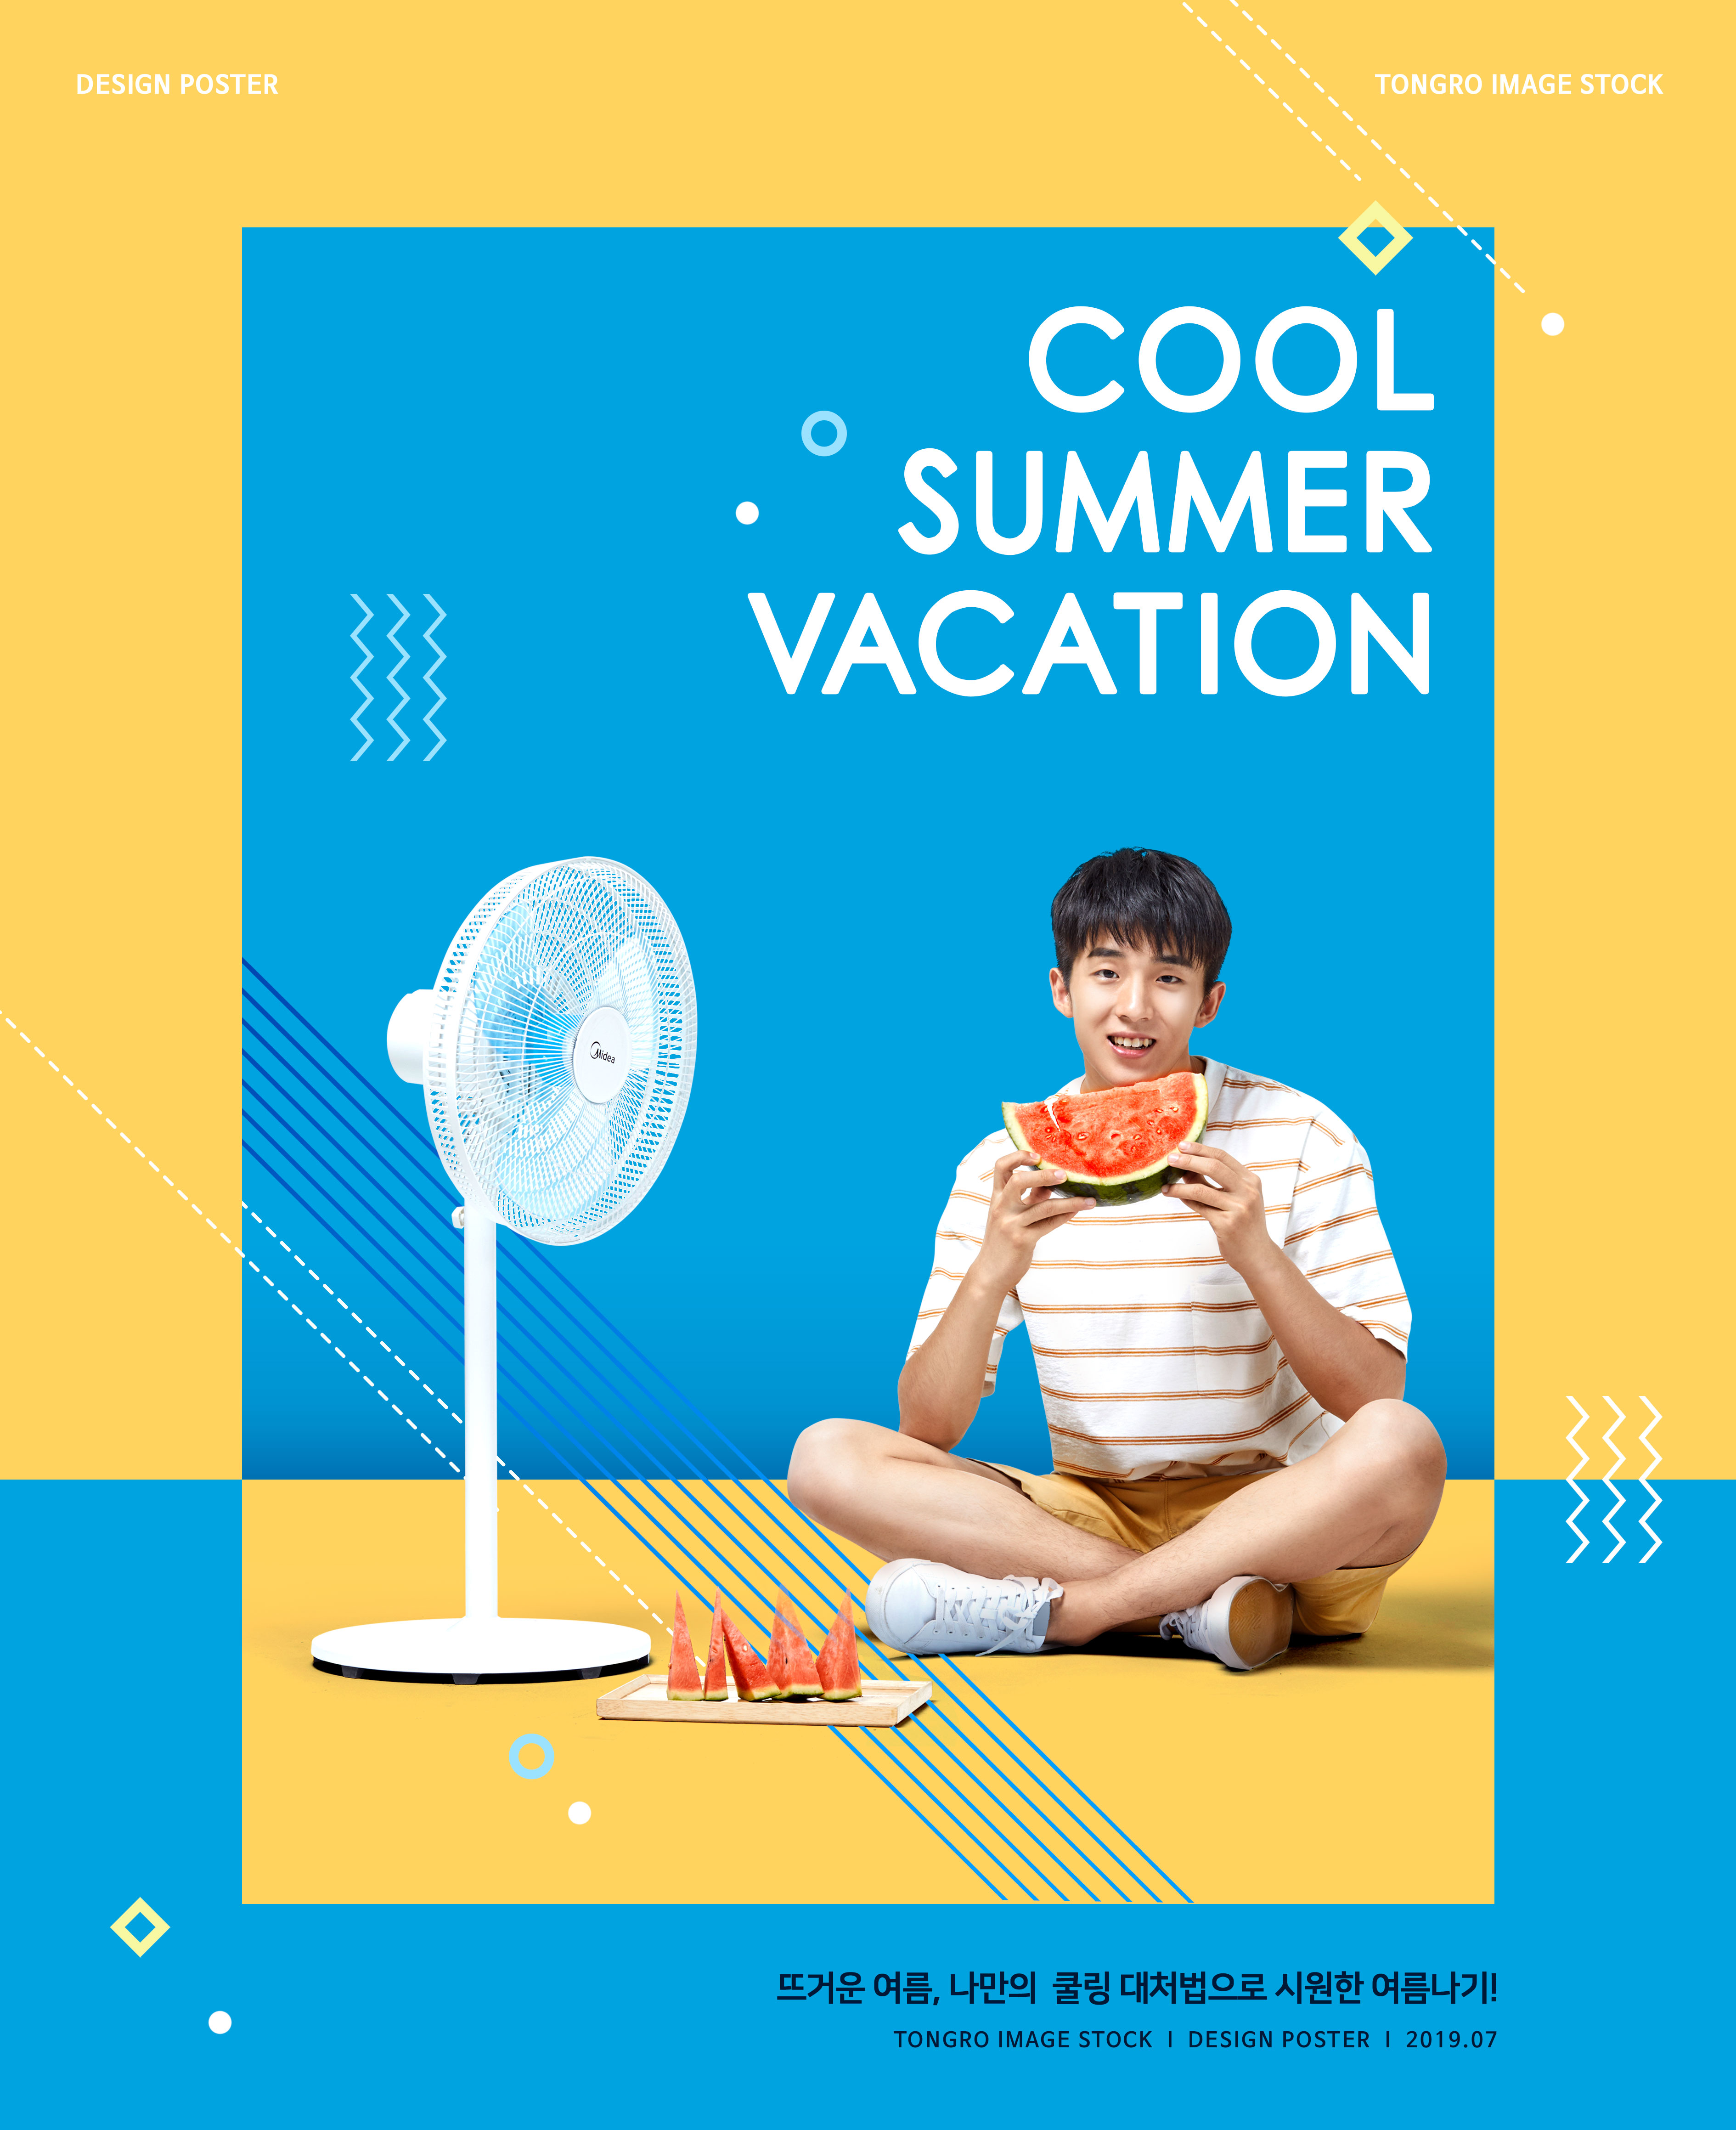 清凉夏季降暑主题海报设计模板[PSD]插图(2)